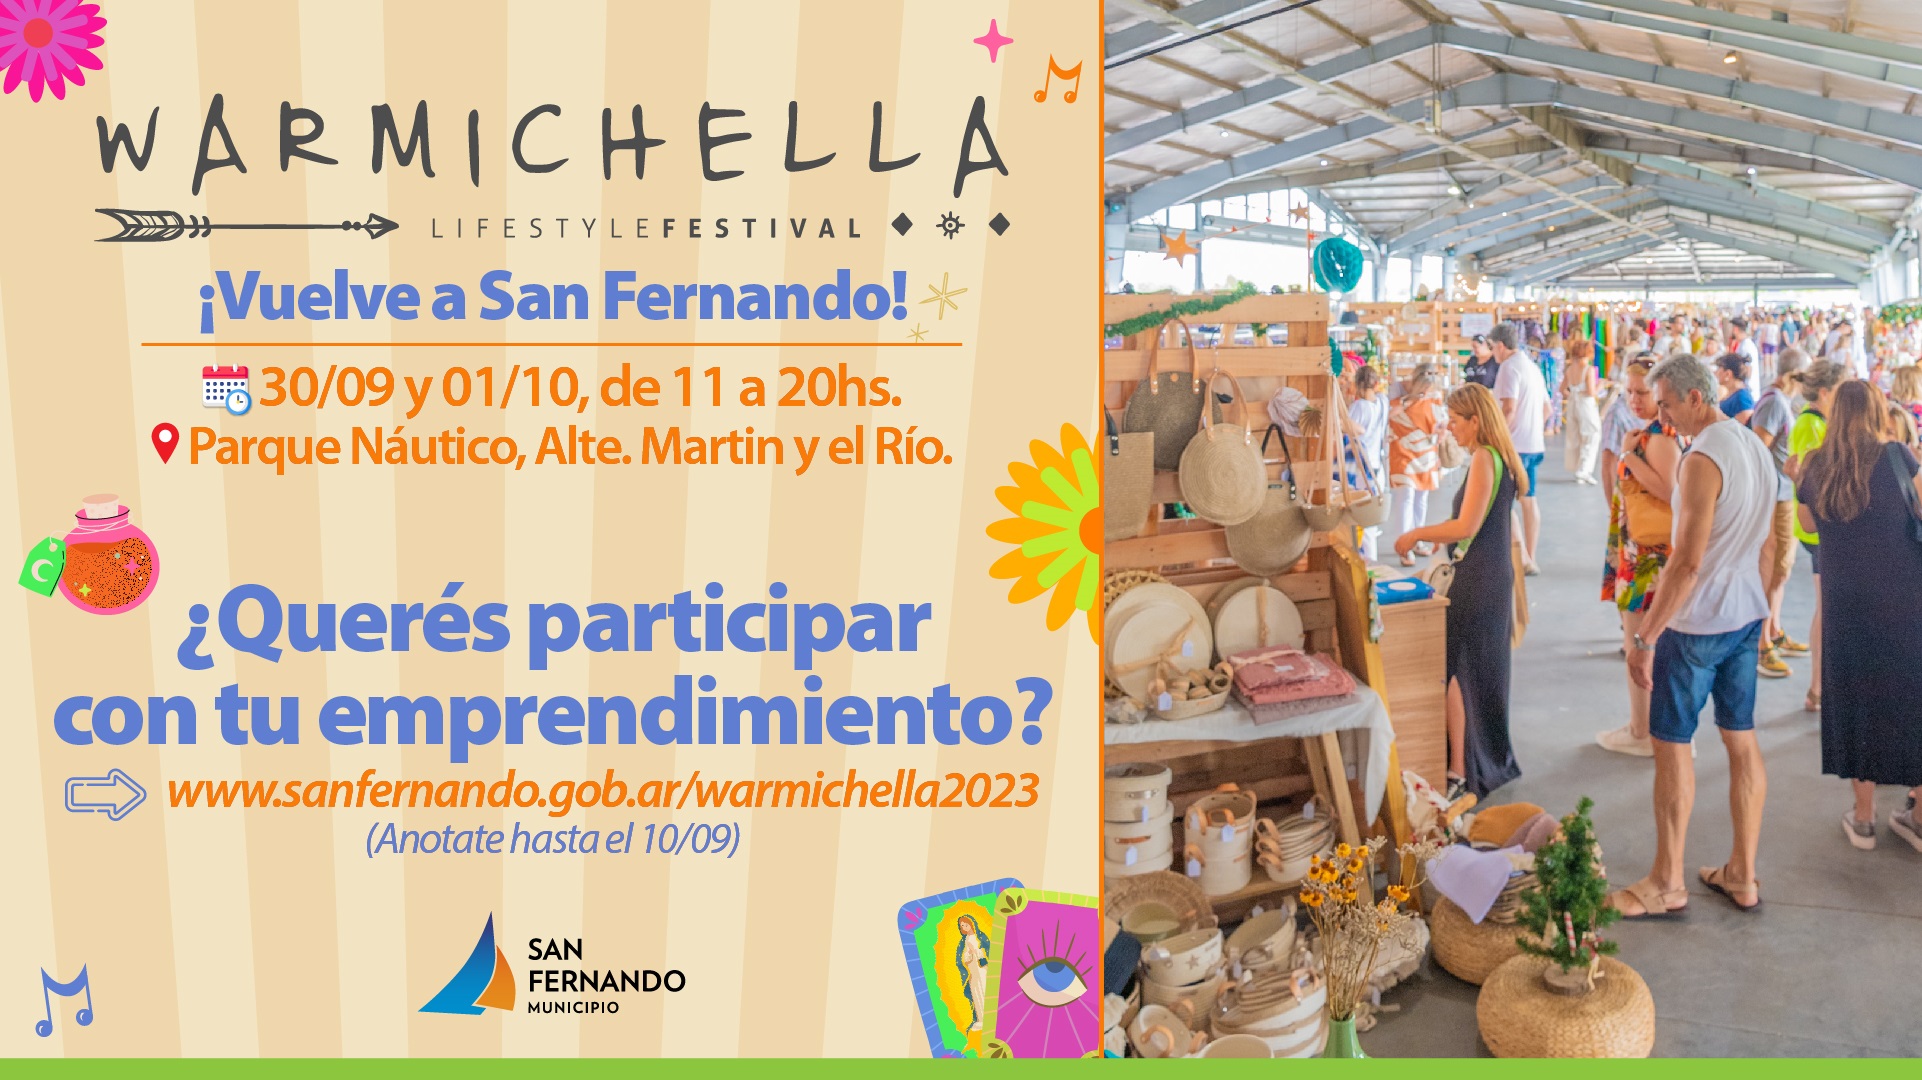 El Festival Warmichella vuelve a San Fernando el 30 de septiembre y 1 de octubre